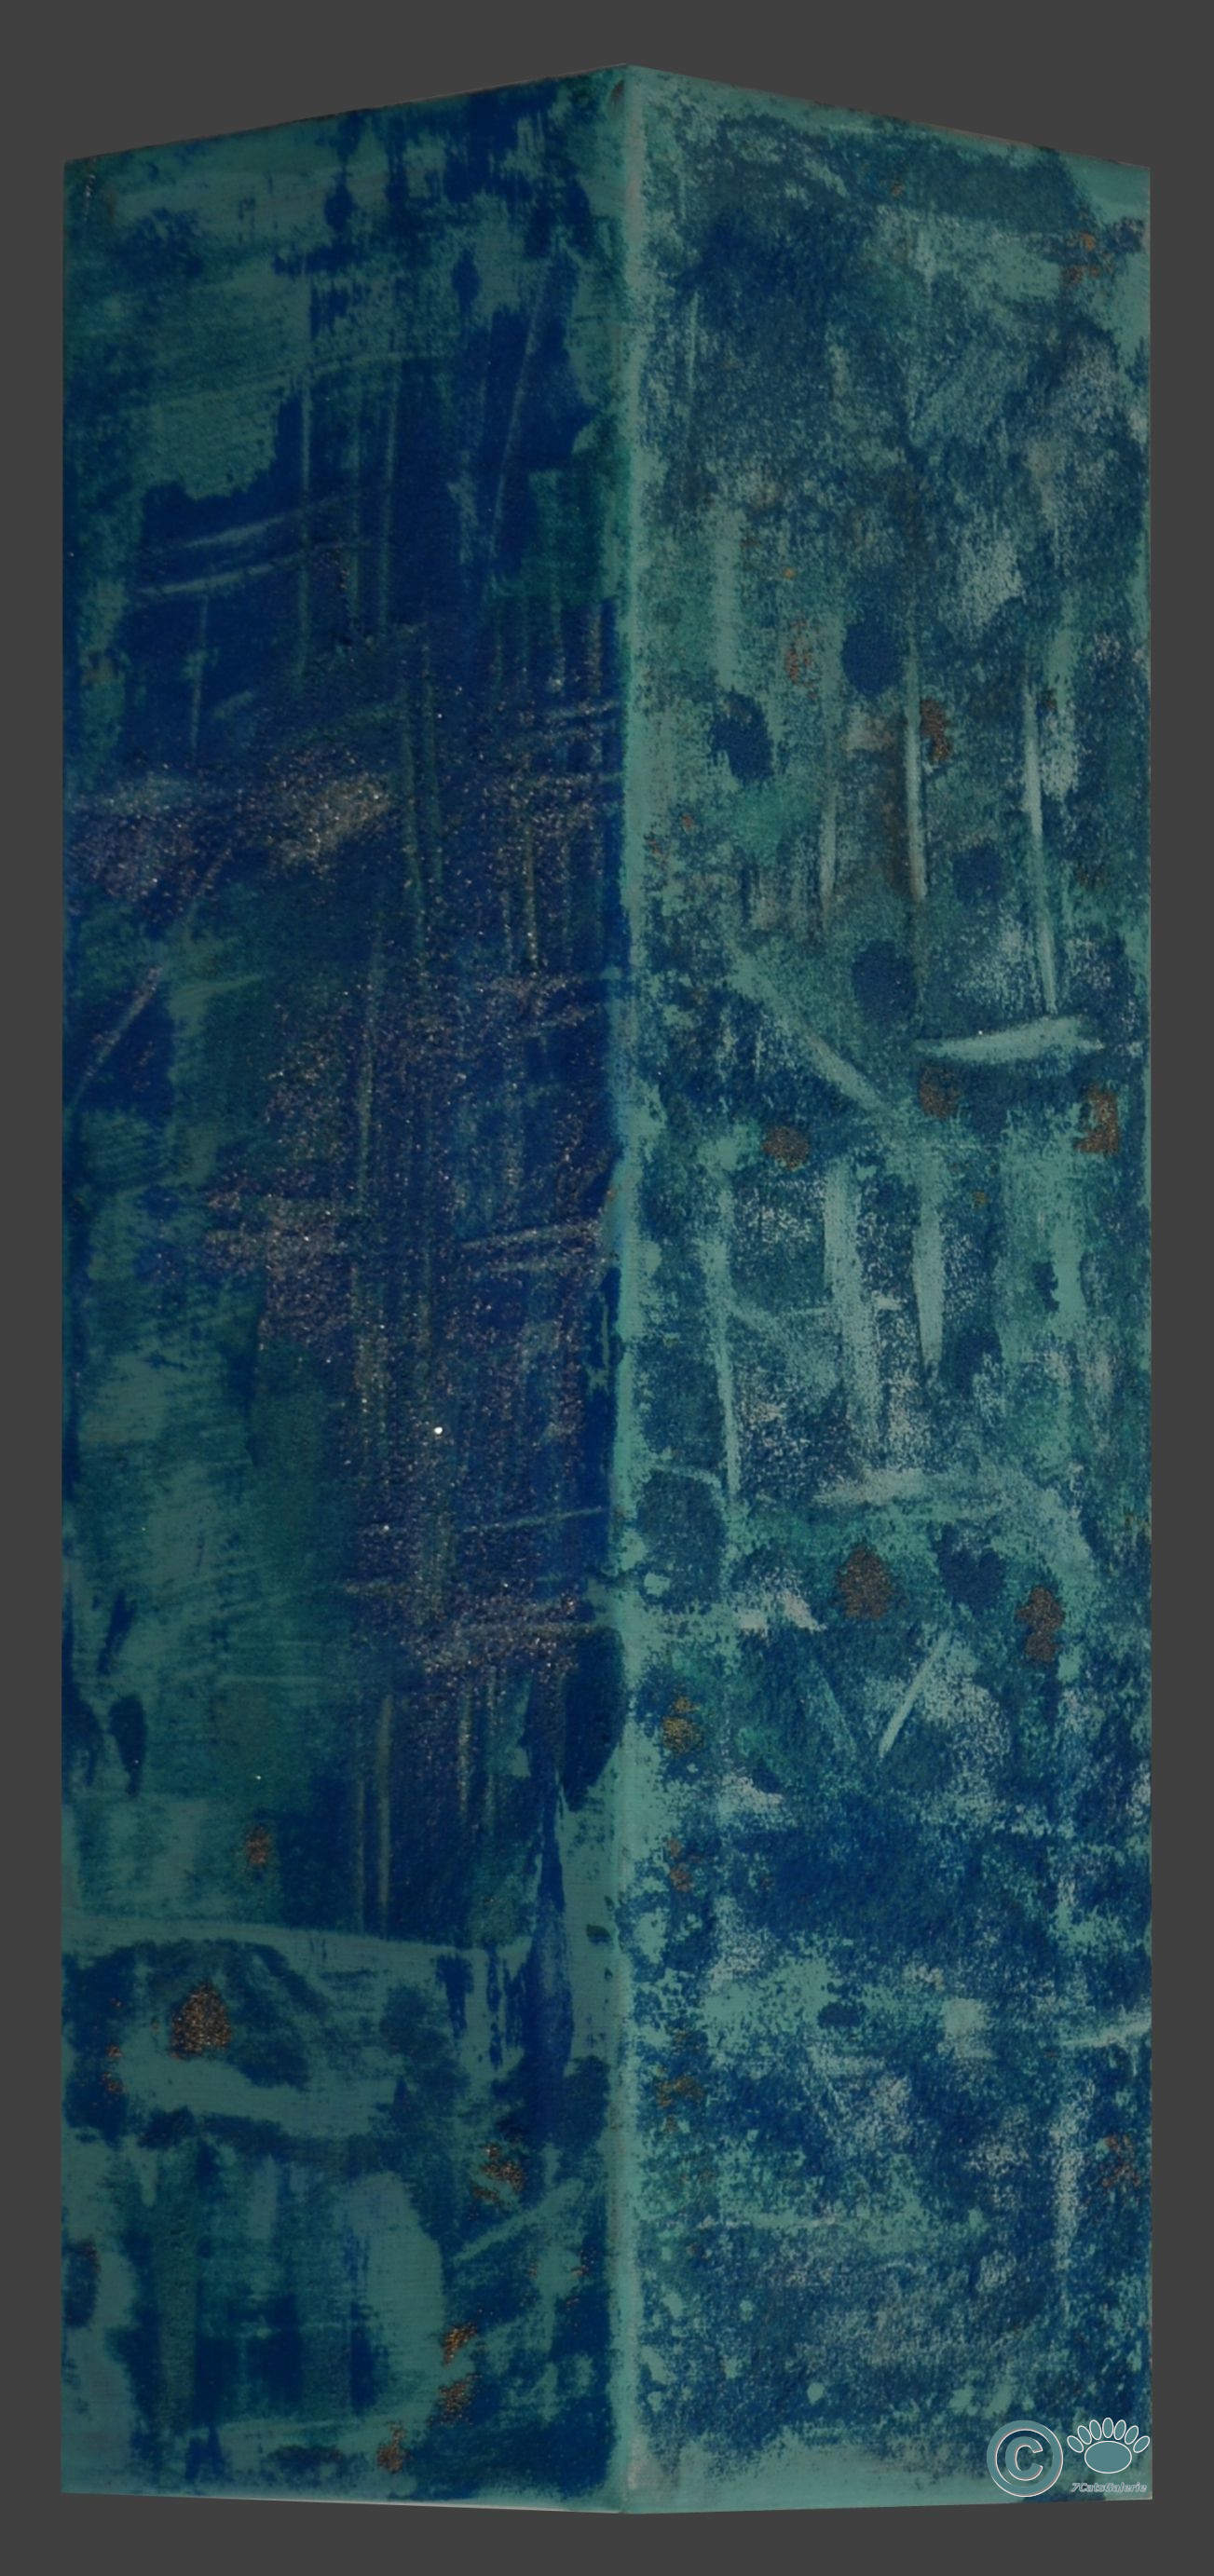 Turquoise I (8" x 8" x 24")